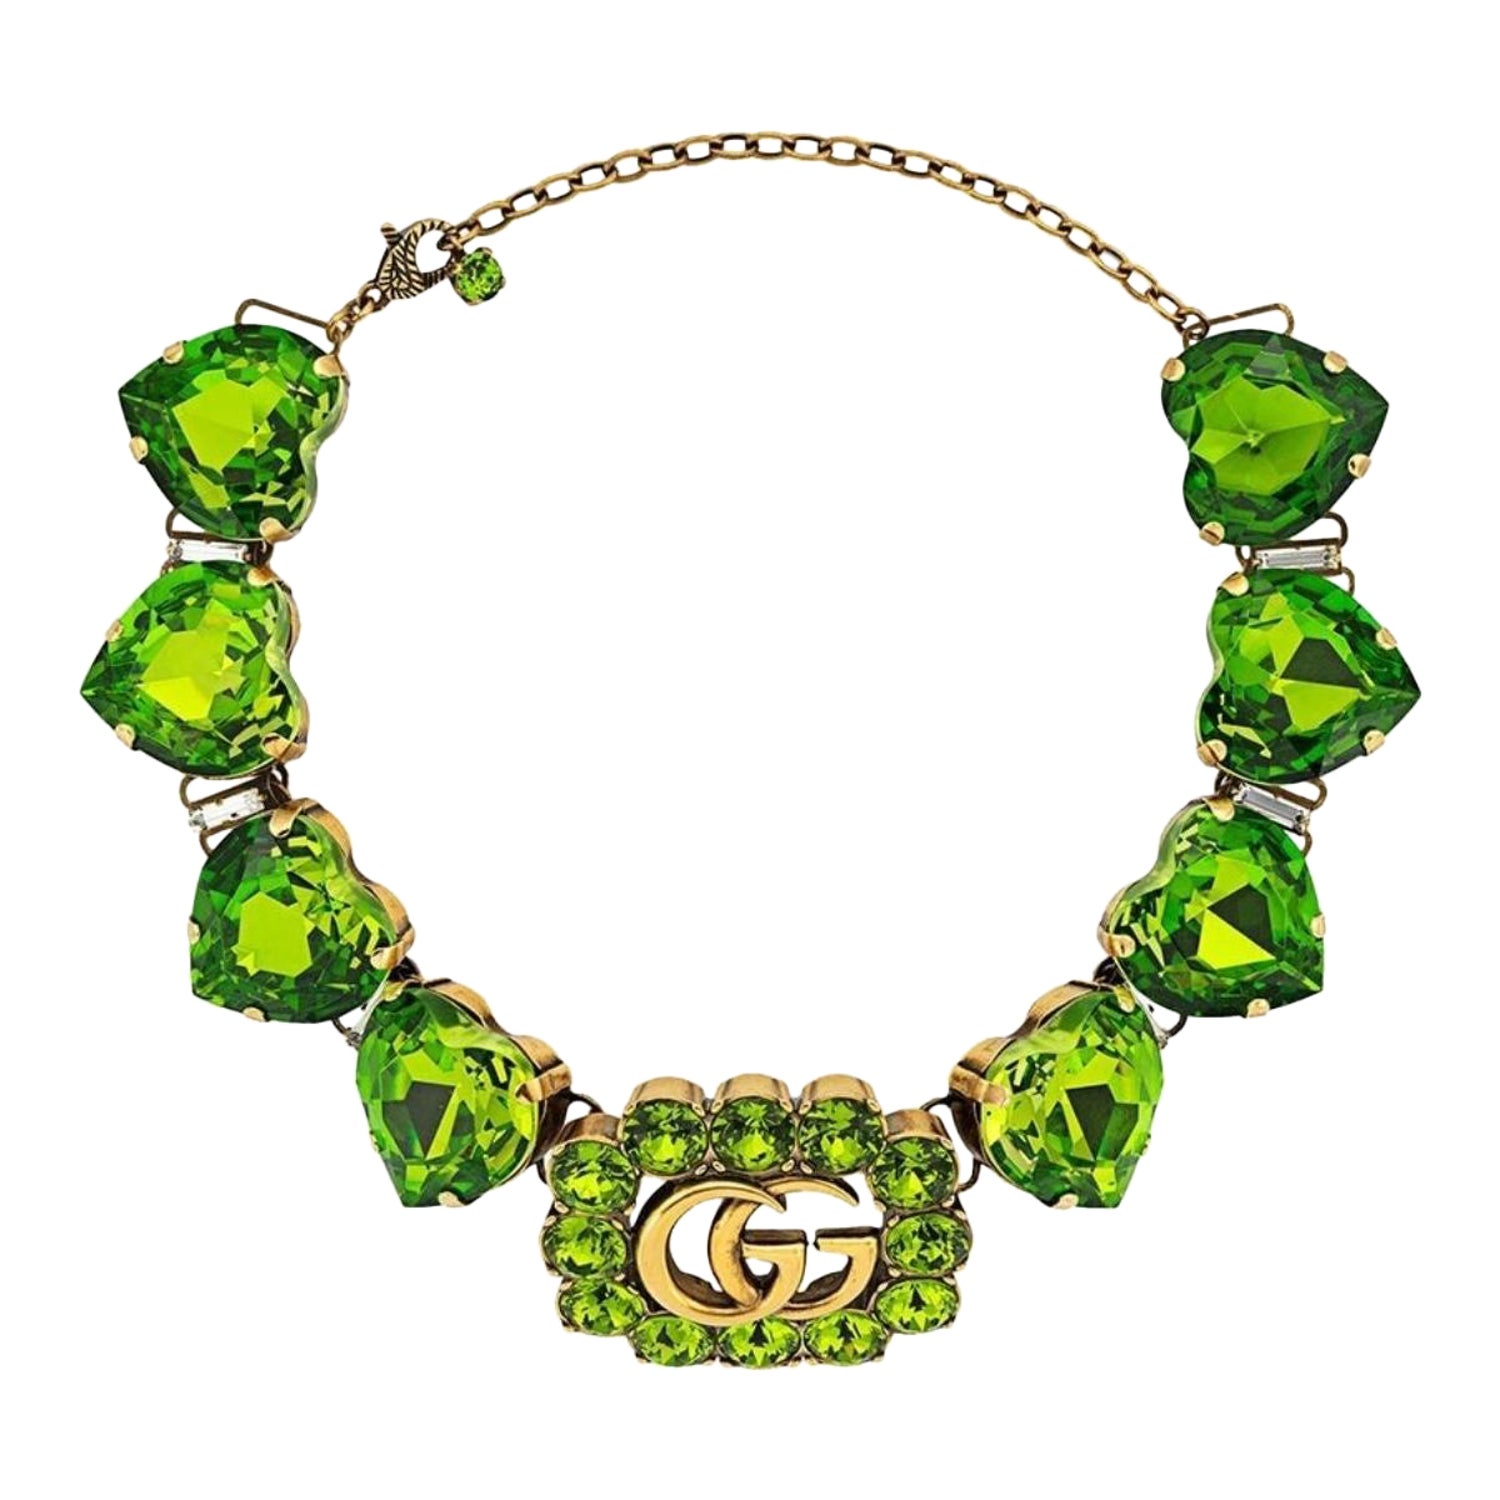 Green Gucci GG Nylon Tote  gucci logo bow tie choker item